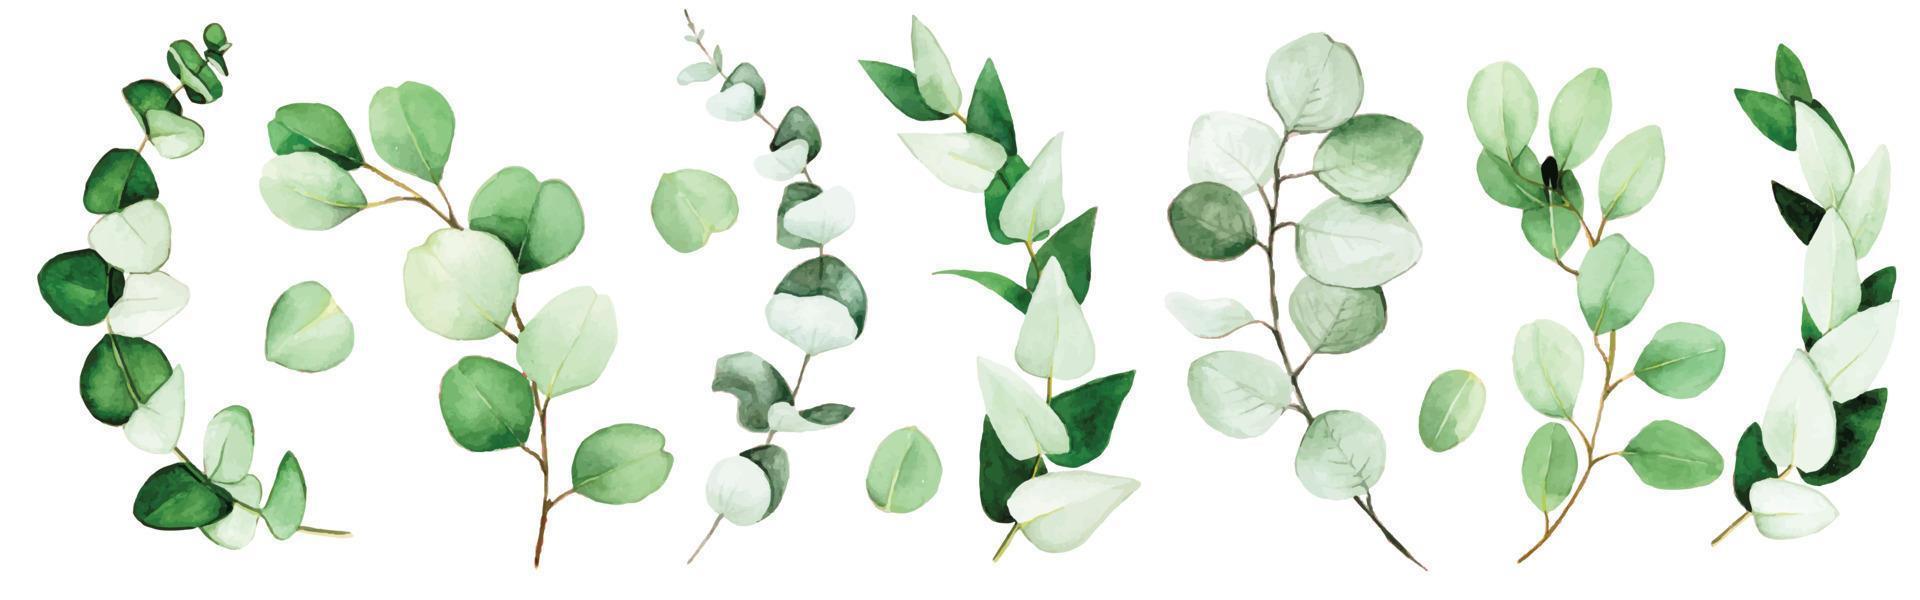 grote set eucalyptusbladeren en takken geschilderd in aquarel. groene eucalyptus bladeren, tropische plant geïsoleerd op een witte achtergrond. vector